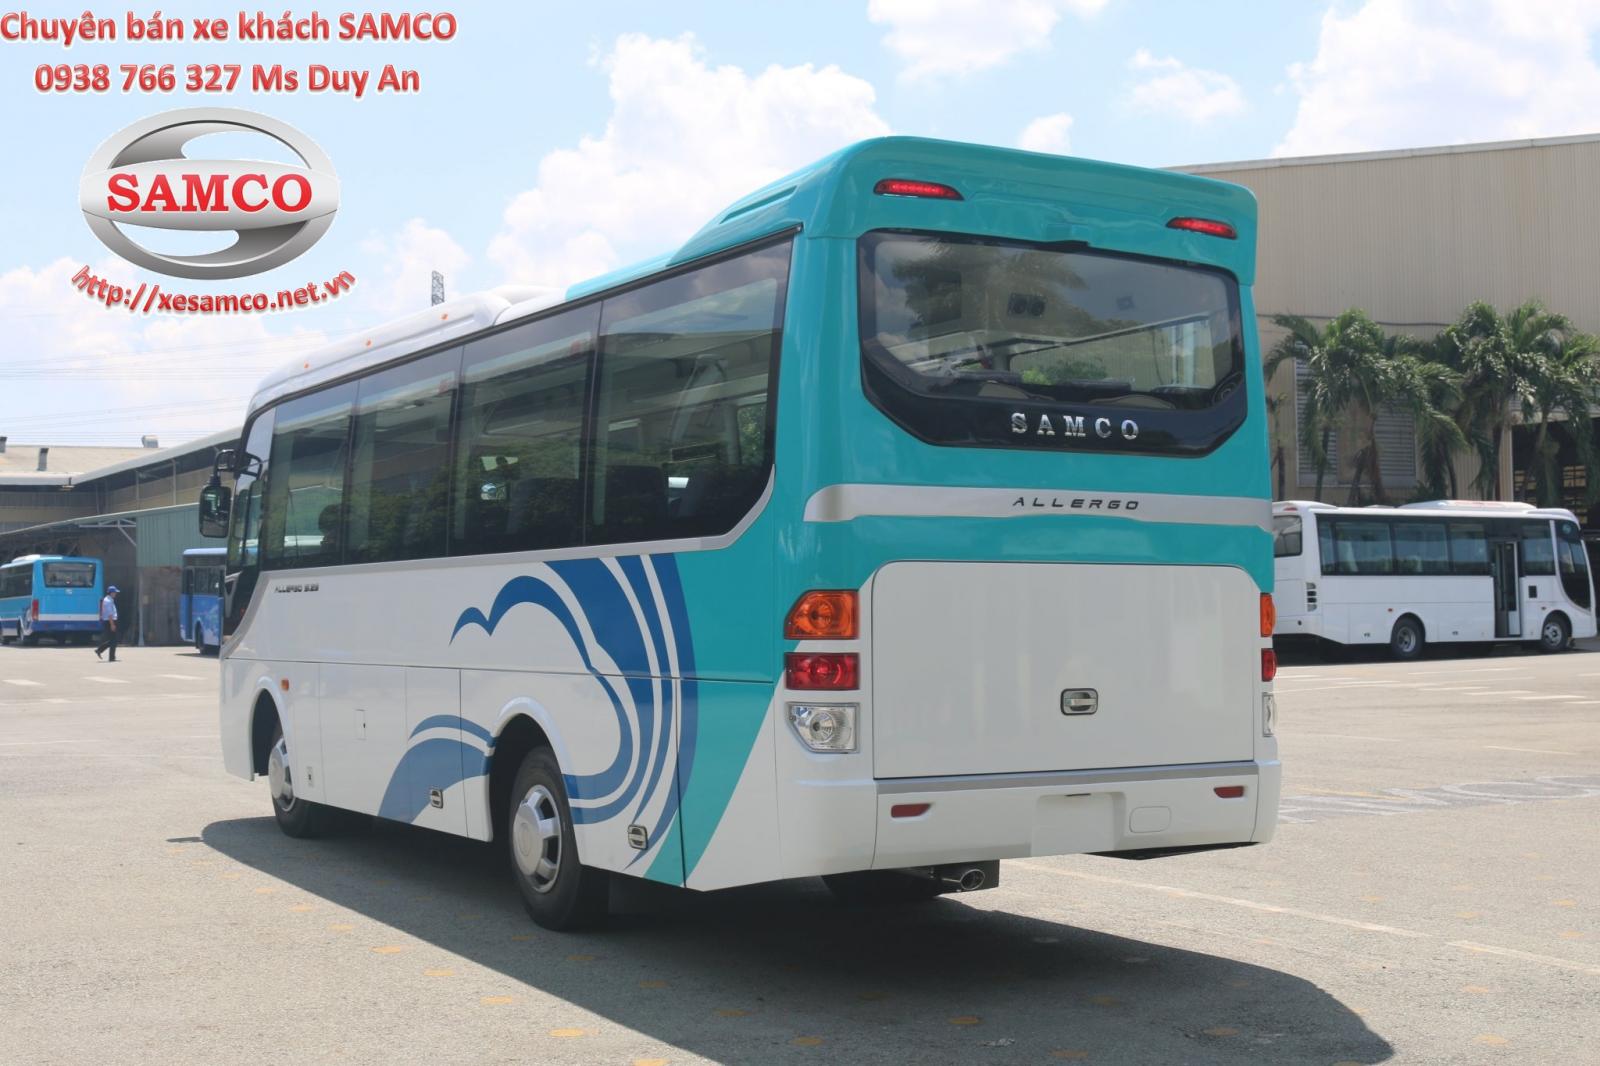 Bán xe khách Samco Allergo 29 chỗ ngồi, động cơ Isuzu Nhật Bản 3.0cc-2